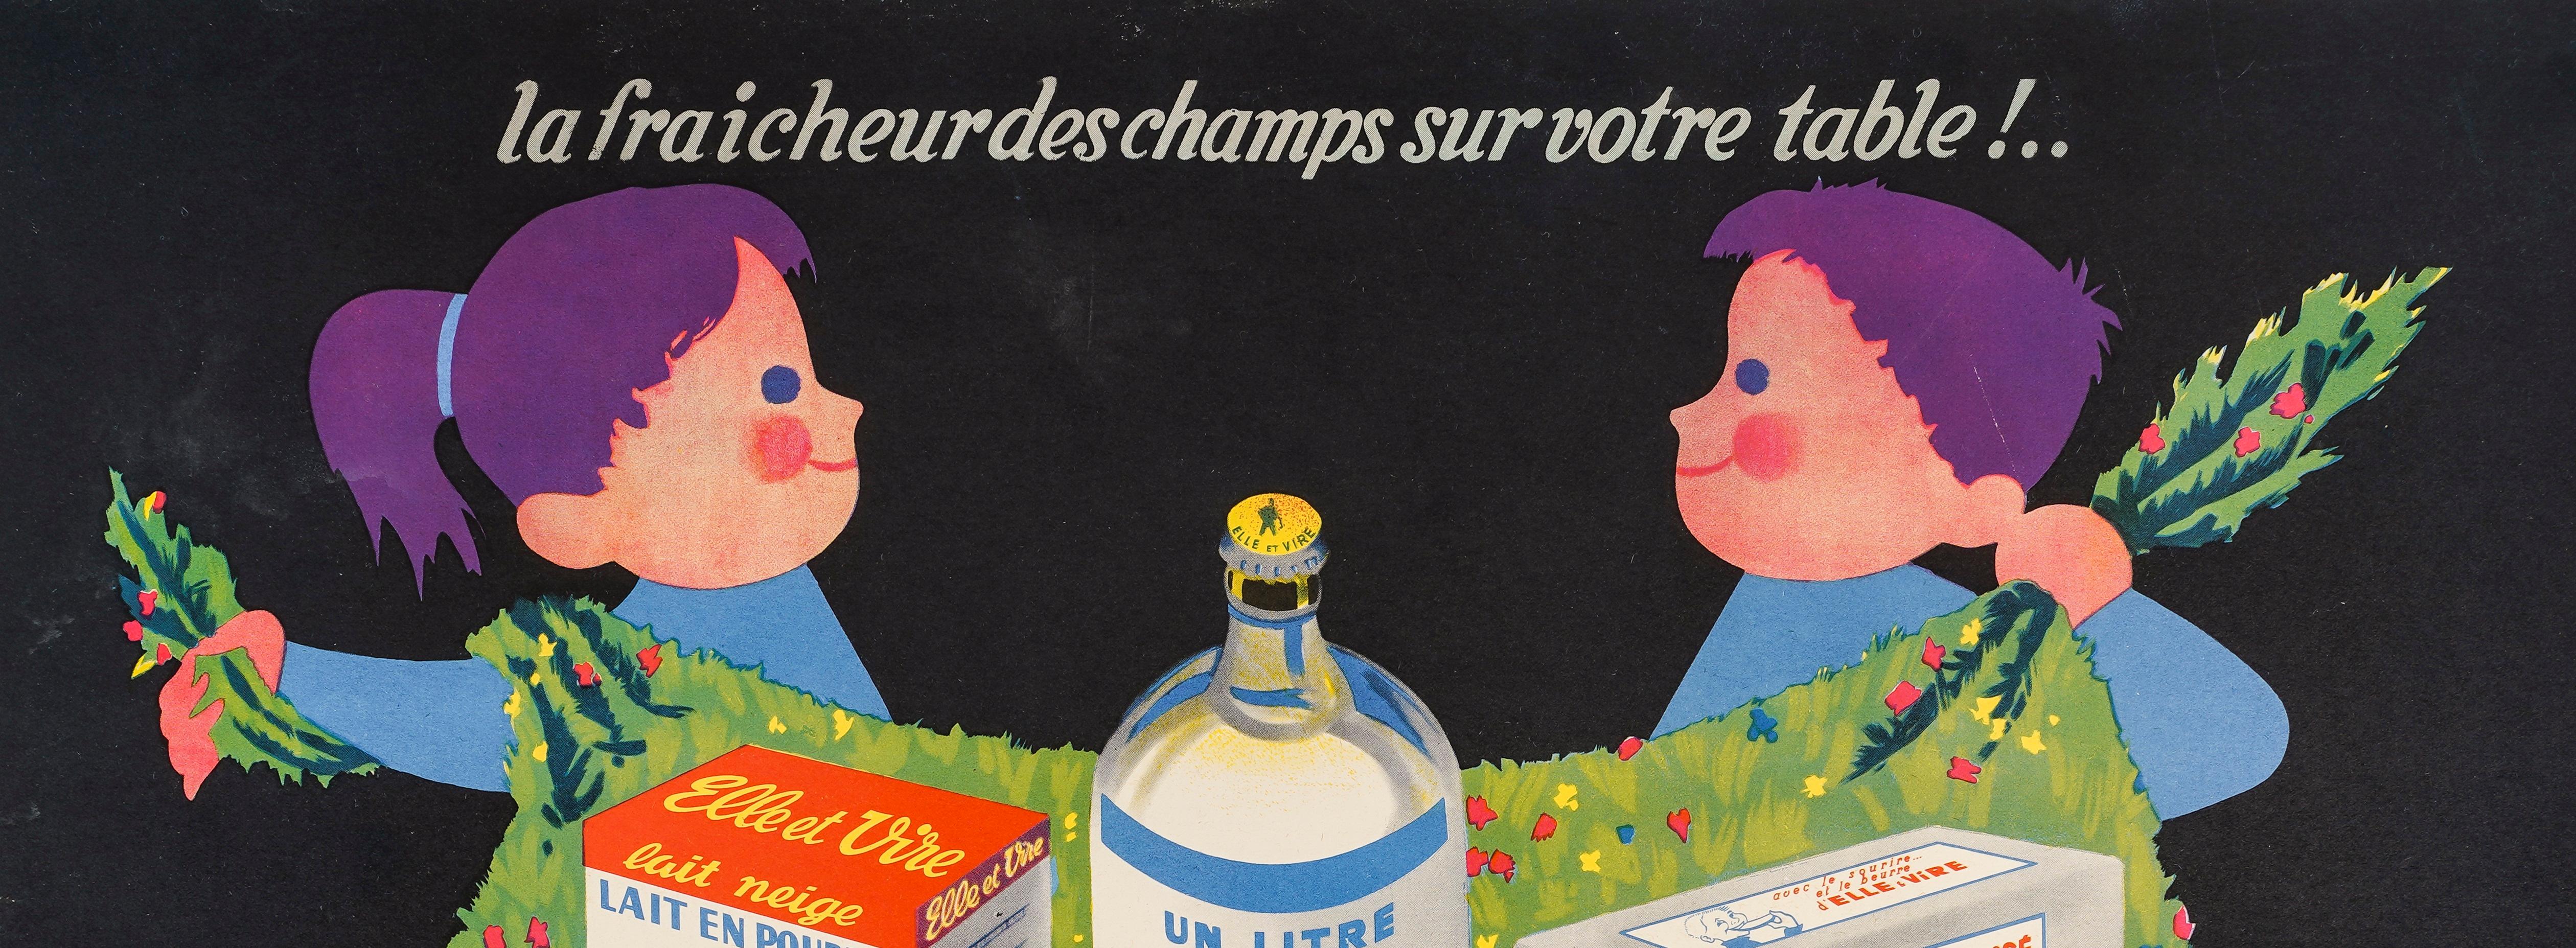 Advertising poster created by Andre Roland in the 1960s for the Elle et Vire brand.

Artist: Roland André
Title : Elle et Vire – La fraîcheur des champs sur votre table
Date: circa 1960
Size (w x h): 15.5 x 11.6 in / 39.4 x 29.4 cm
Printer:  Etb De